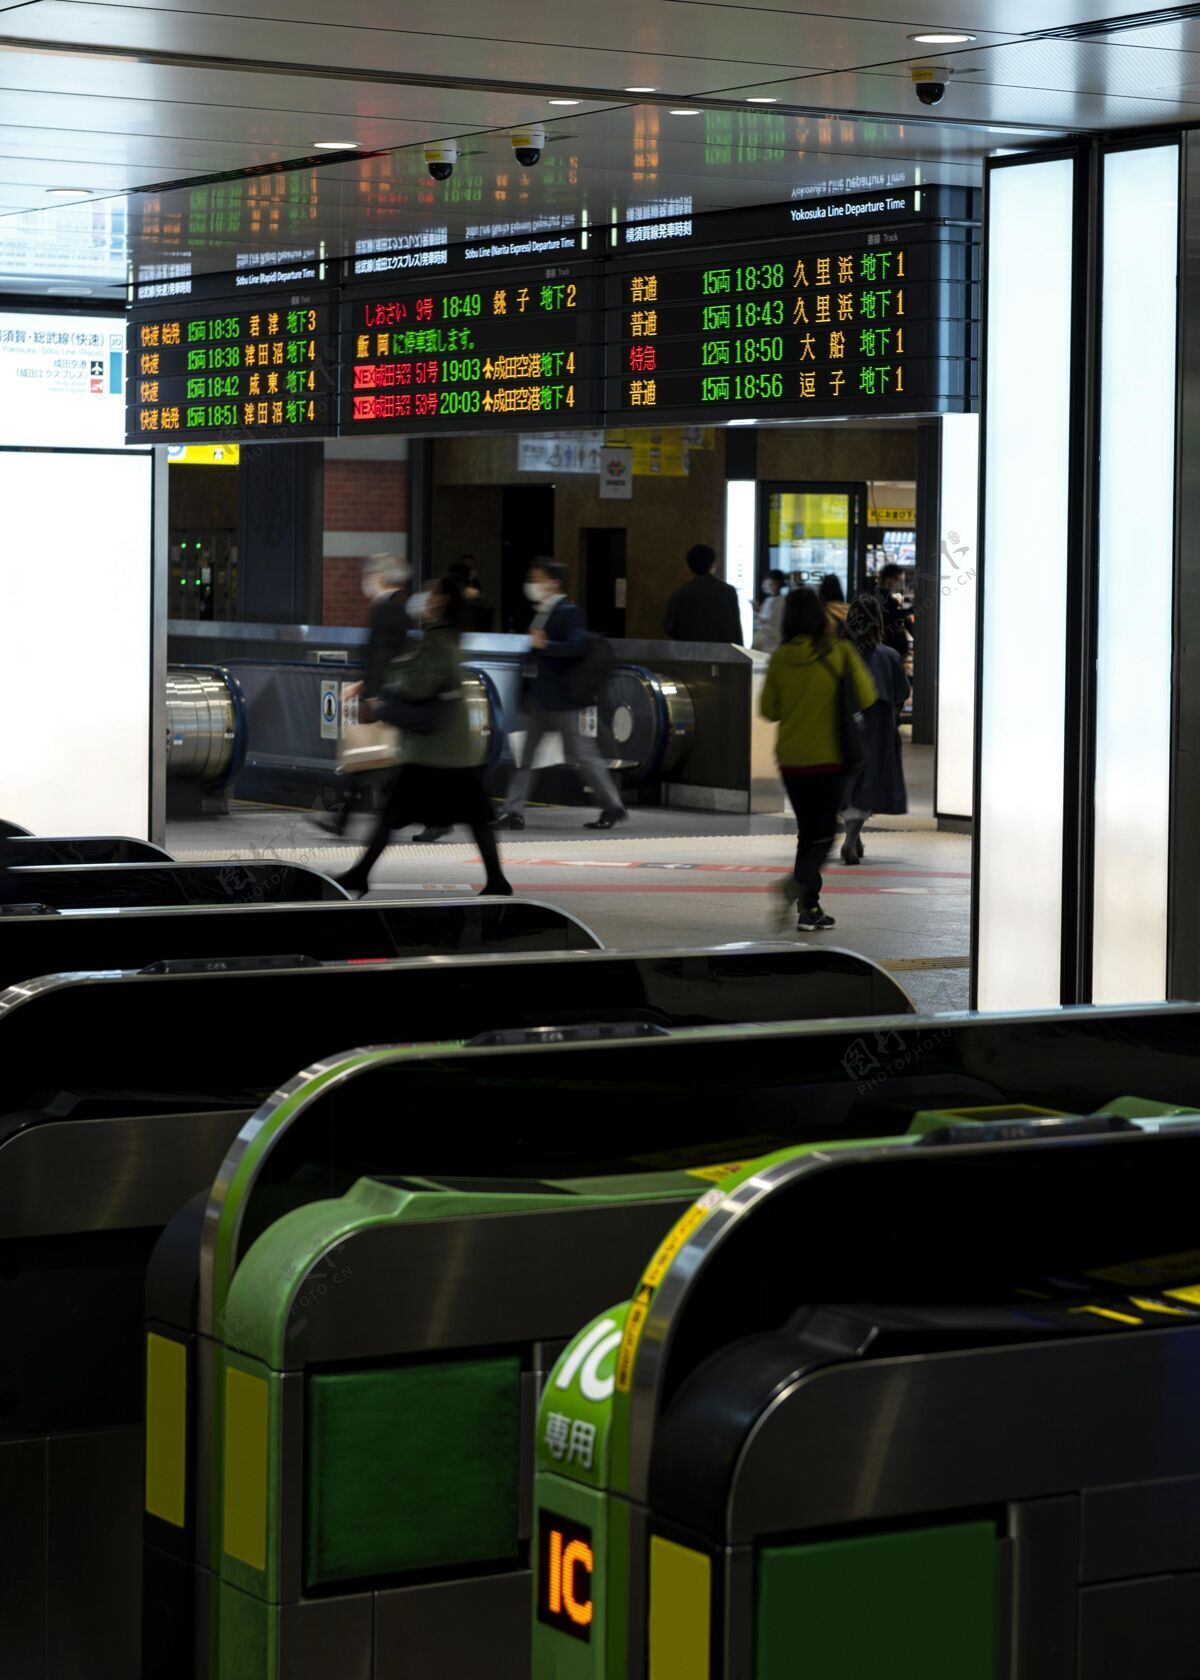 日本日本地铁系统乘客信息显示屏地铁旅游信息